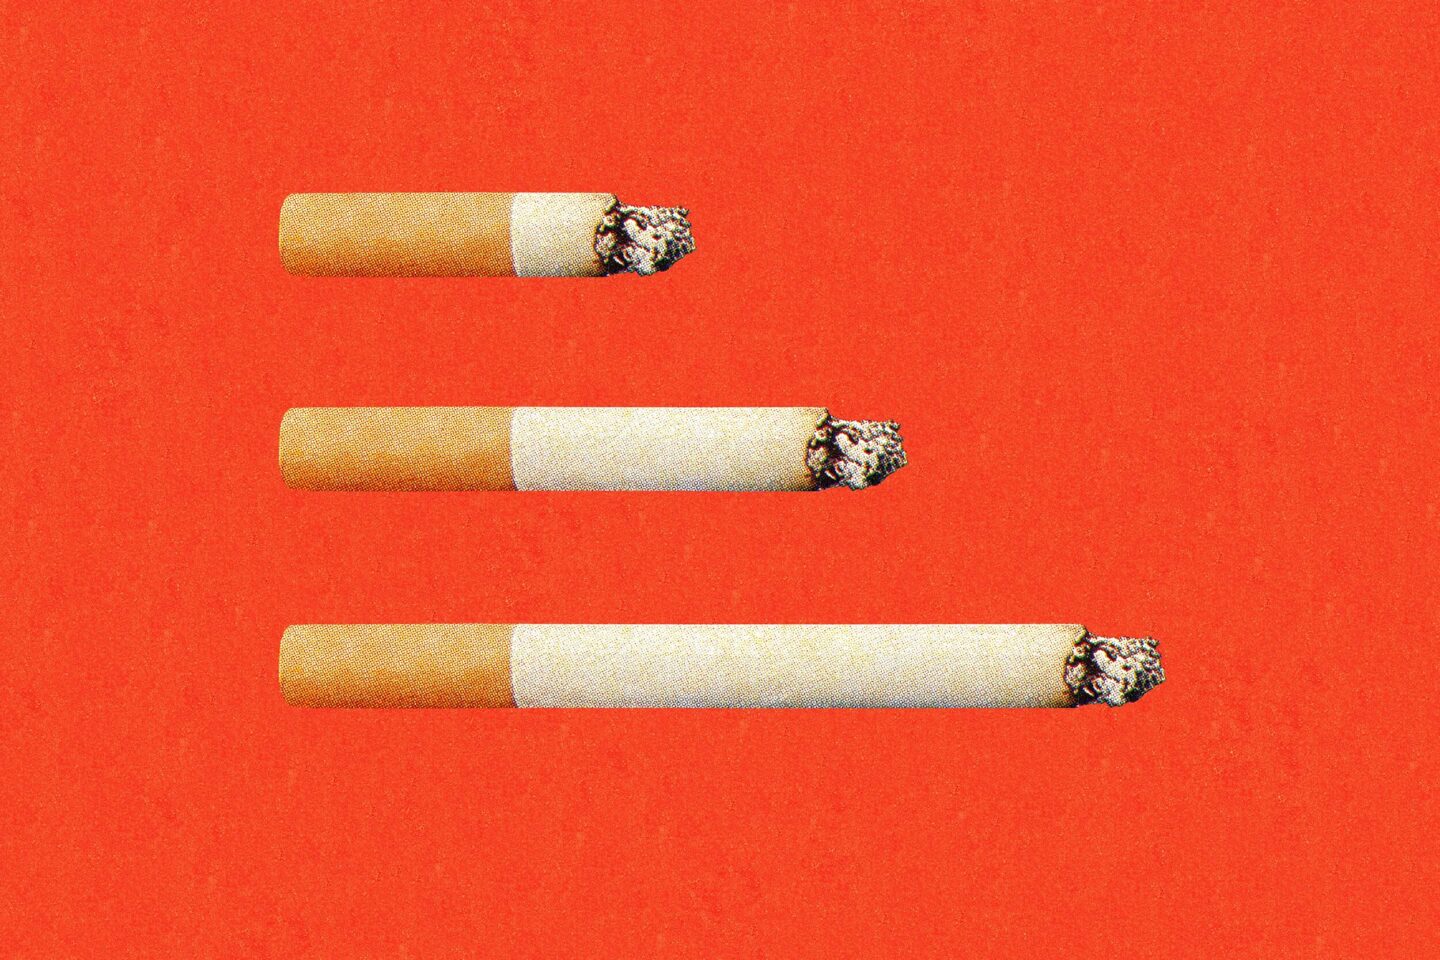 Куріння сигарет викликає майже 500 захворювань. Дослідження